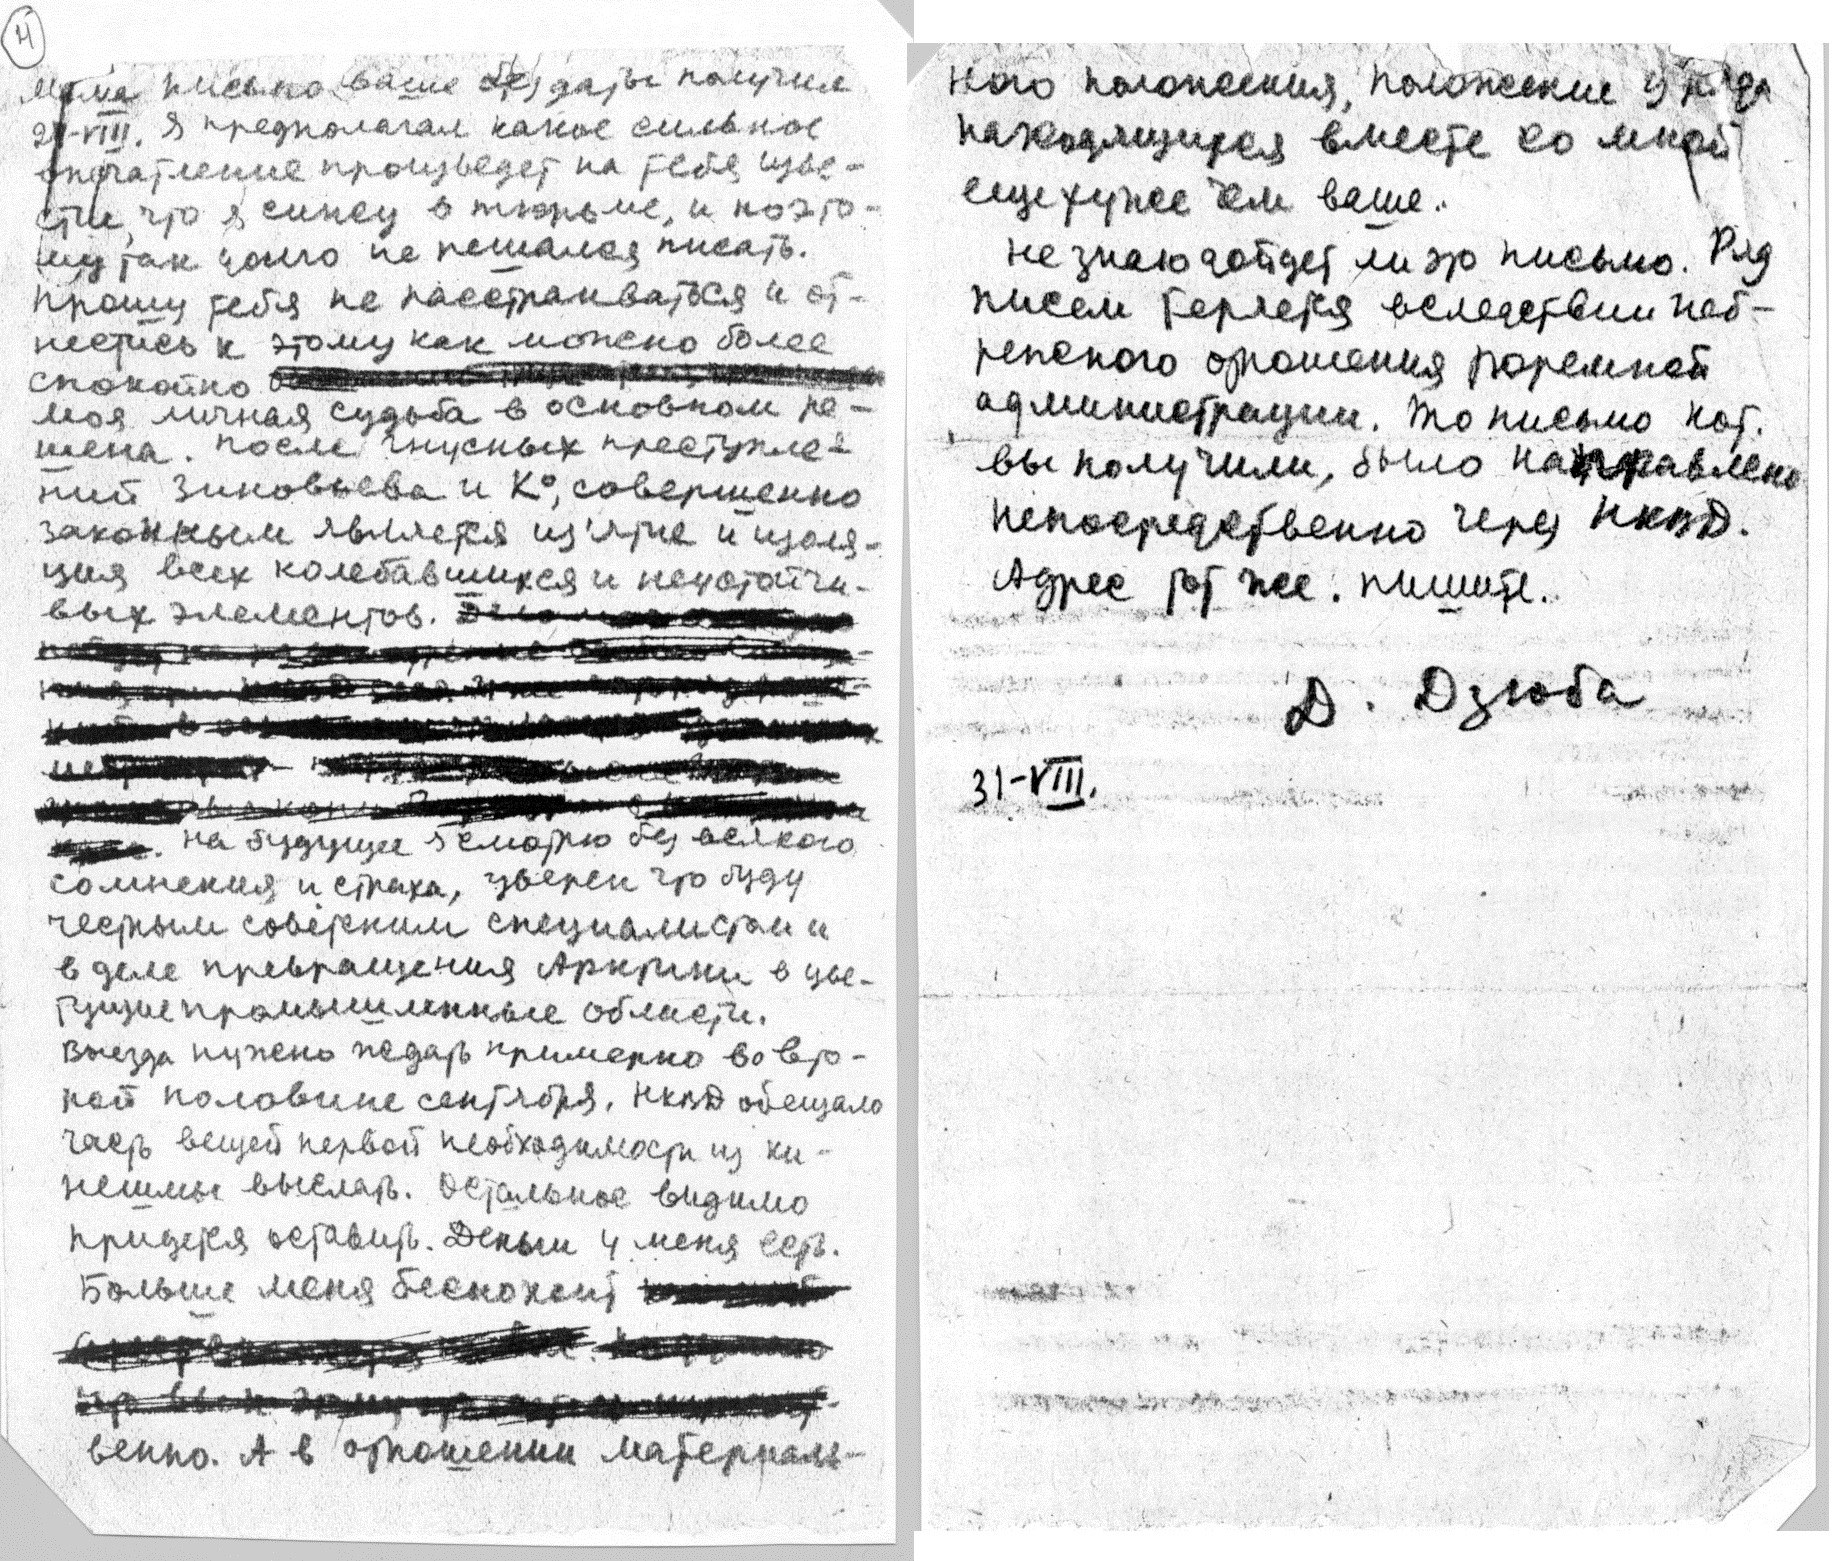 Первое письмо из тюрьмы (со следами цензуры) 31 августа 1936 года